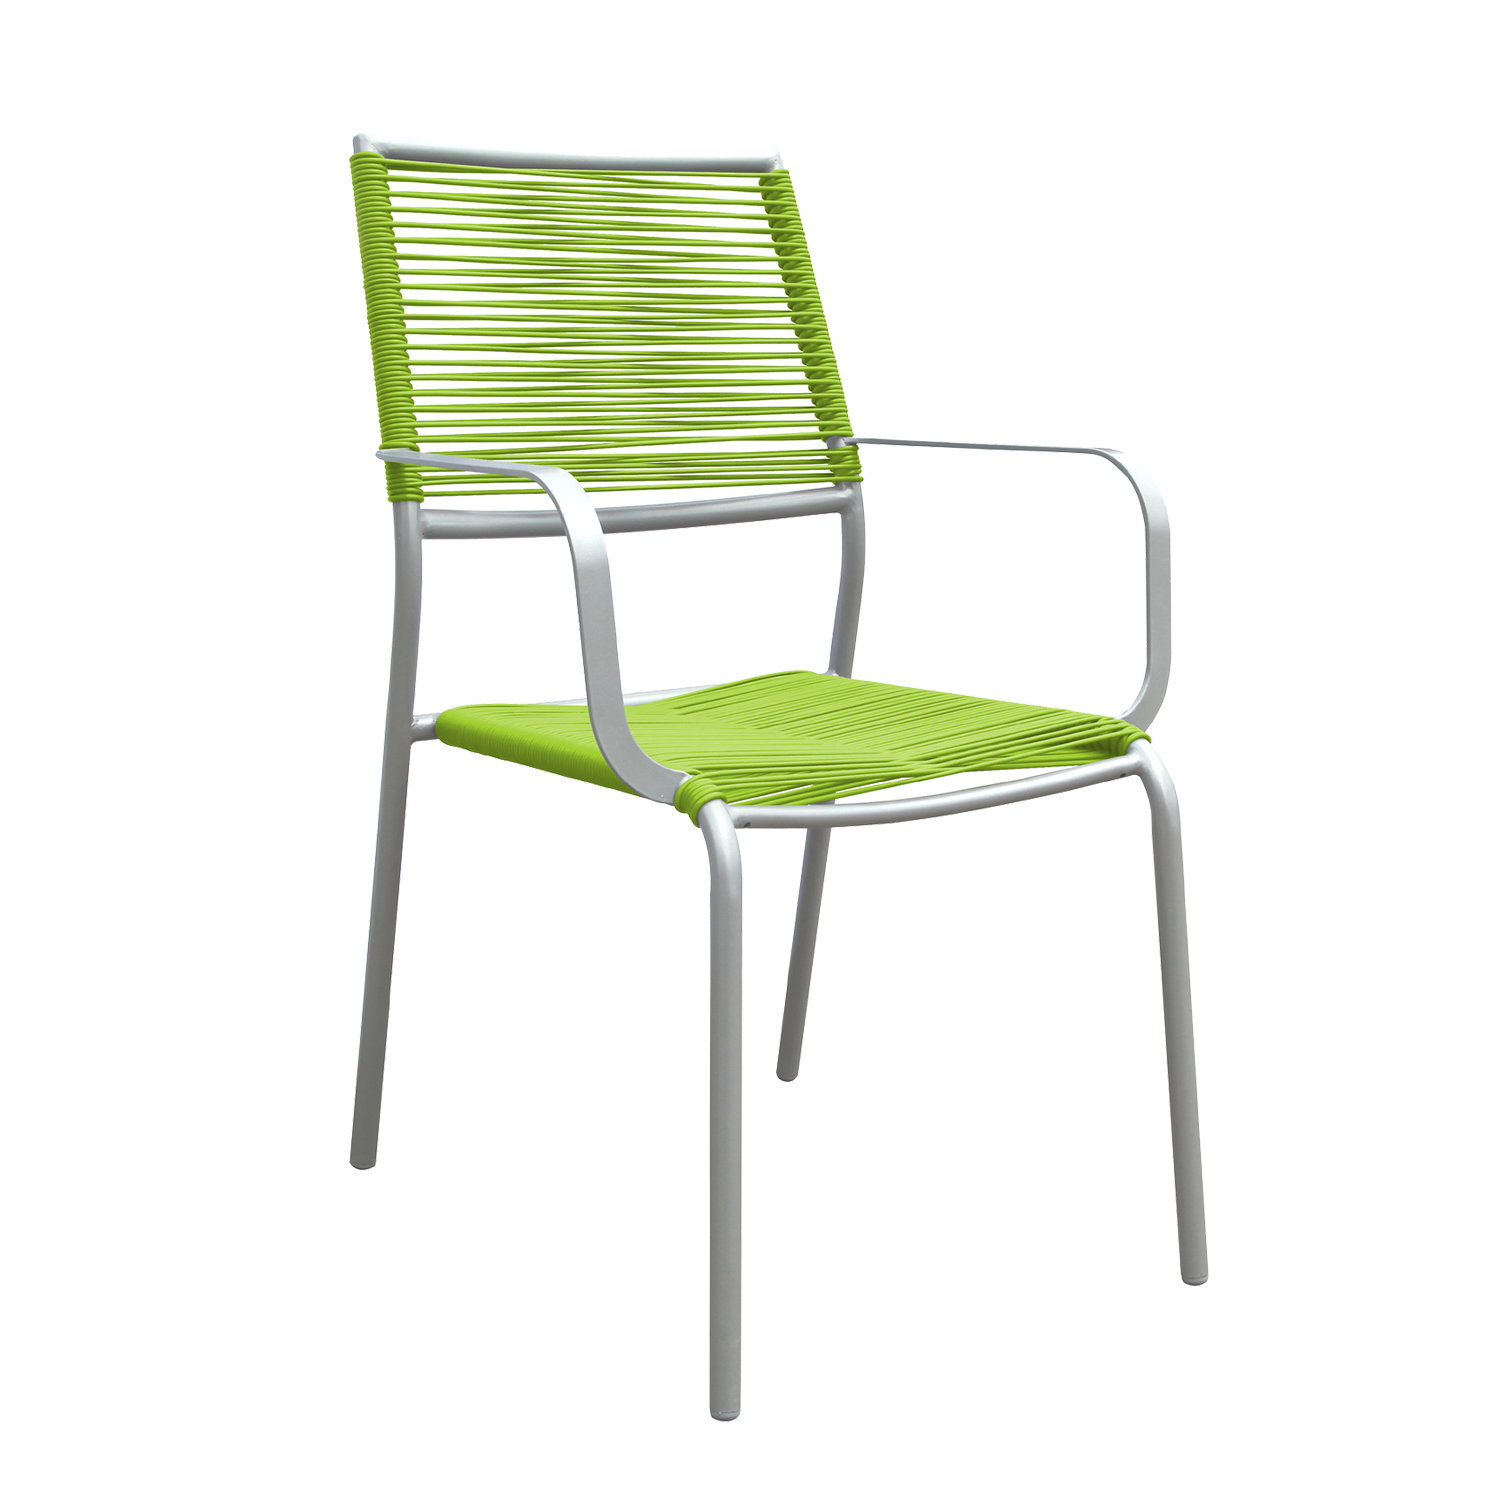 Стул easy. Стул серо зеленый. Стулья салатового цвета с подлокотниками. Стул цвет лайм. Стул easy Chair.